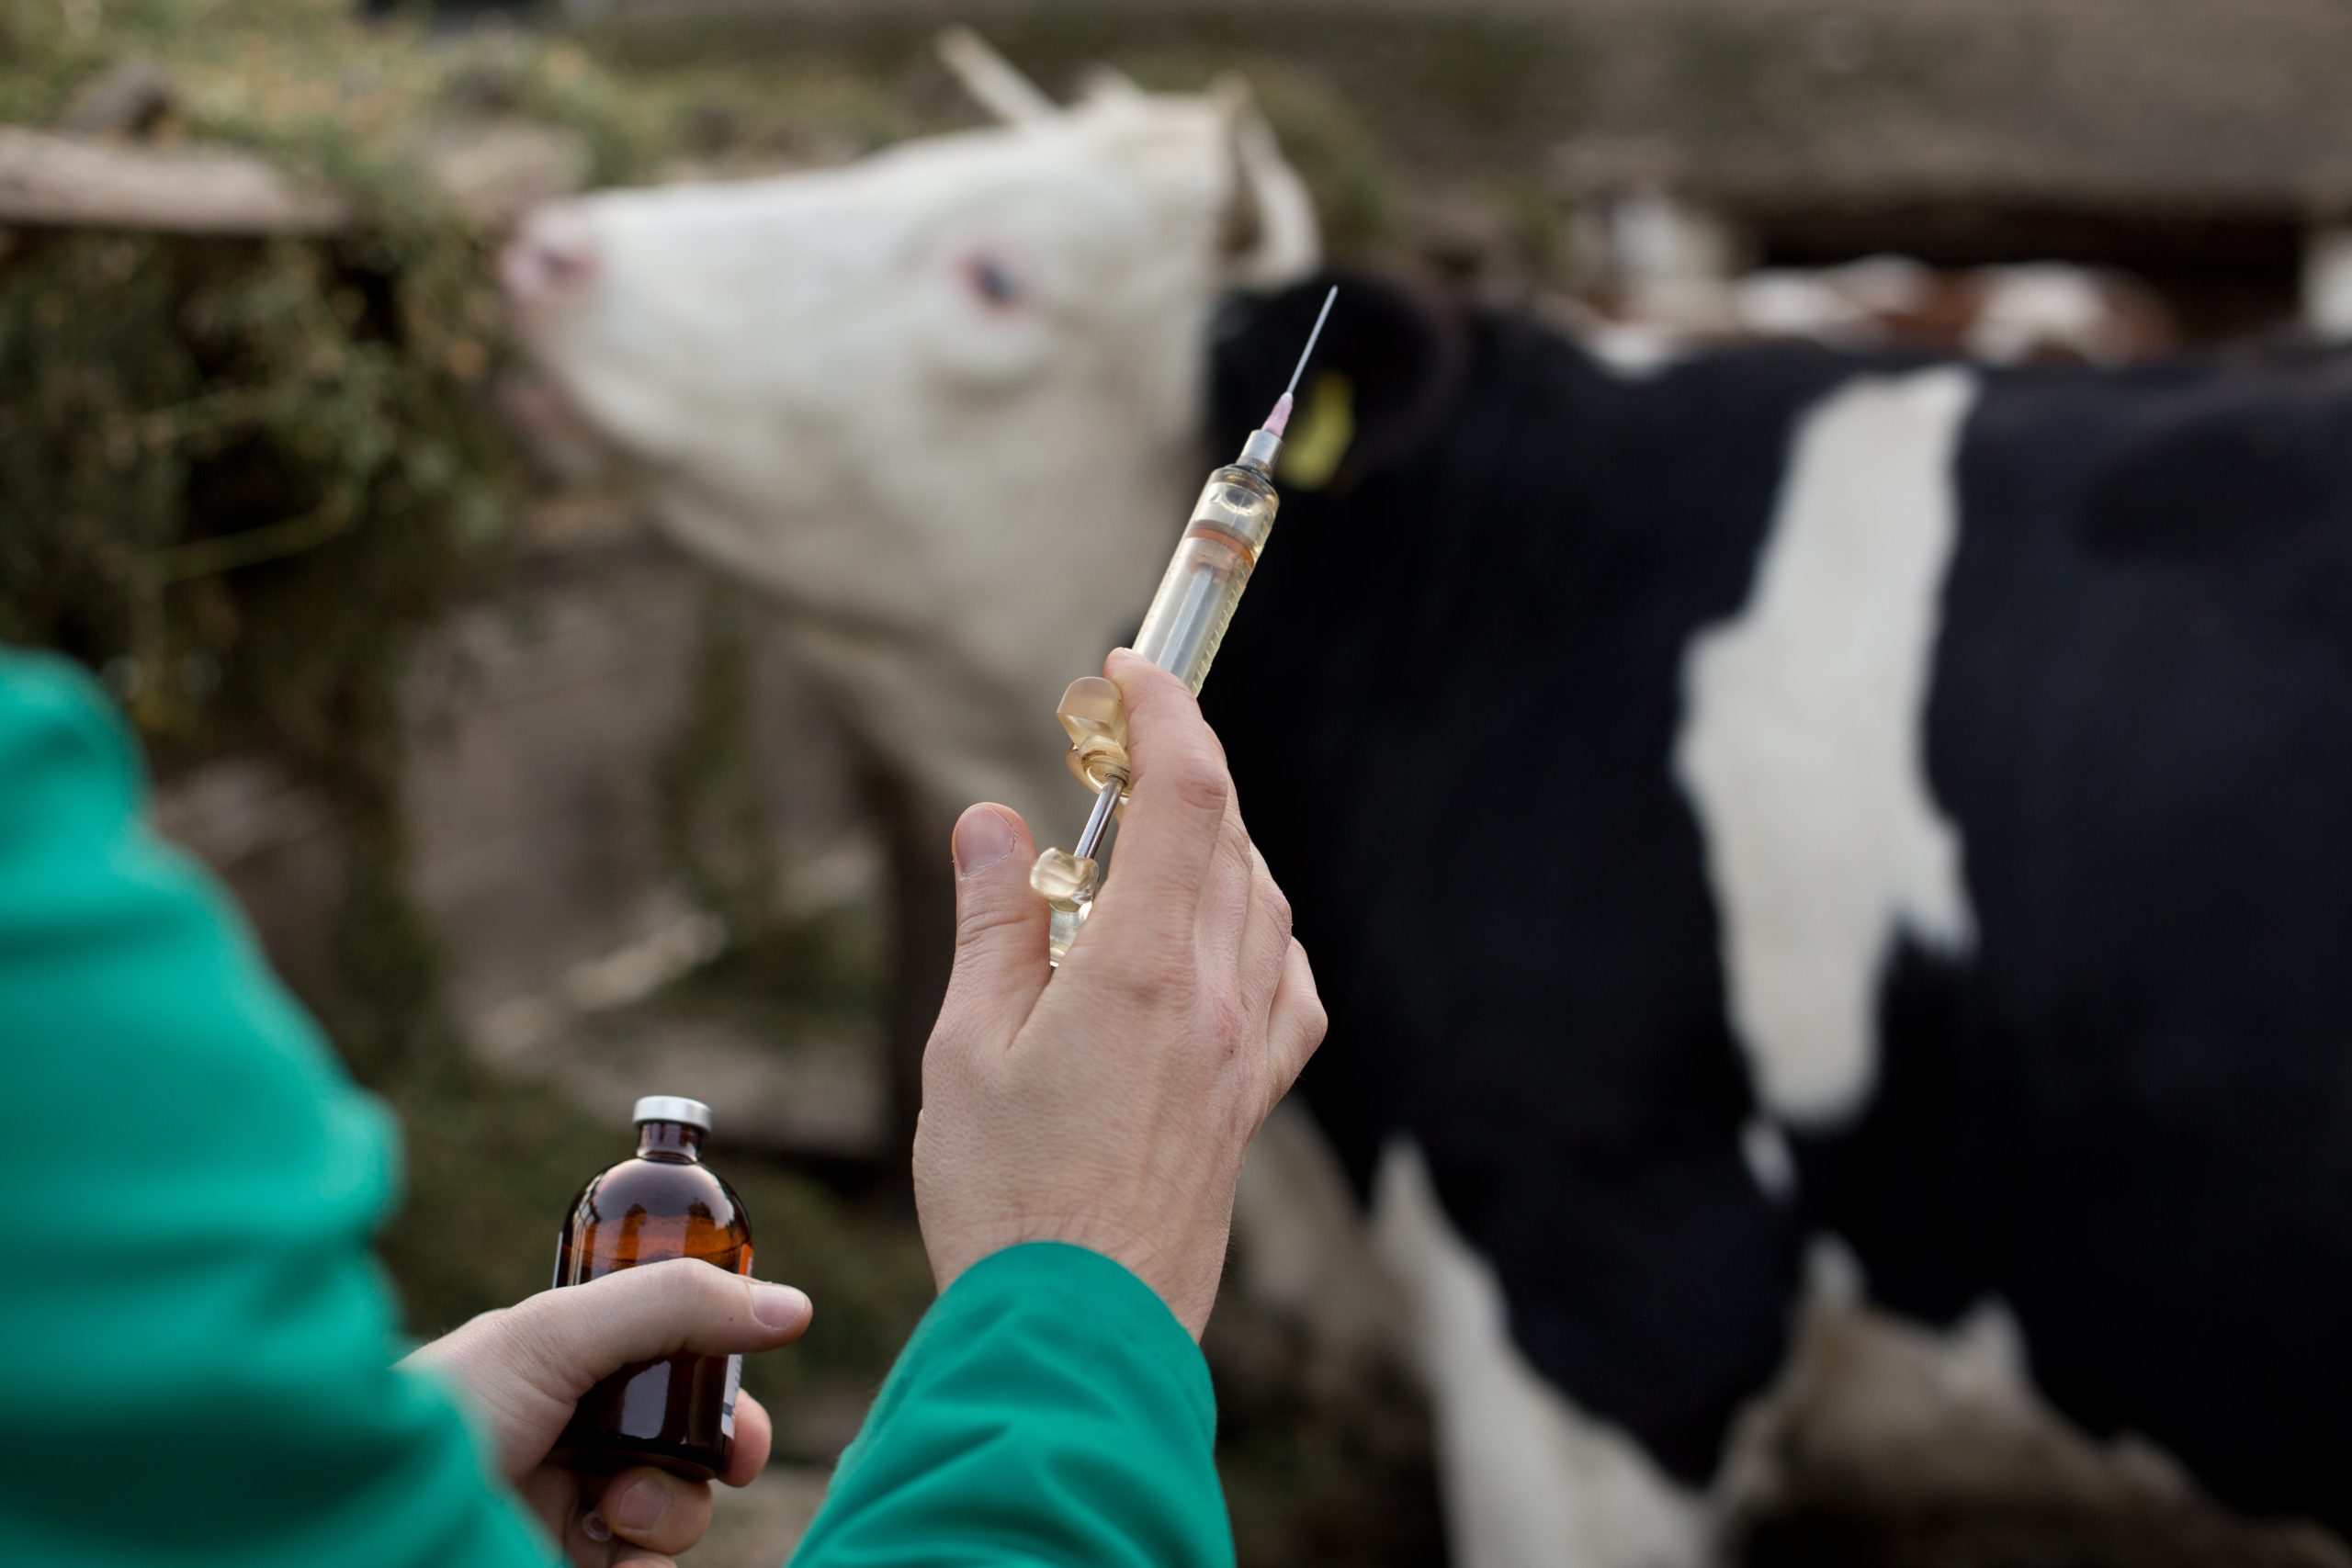  Эффективность вакцинации при остром послеродовом эндометрите коров